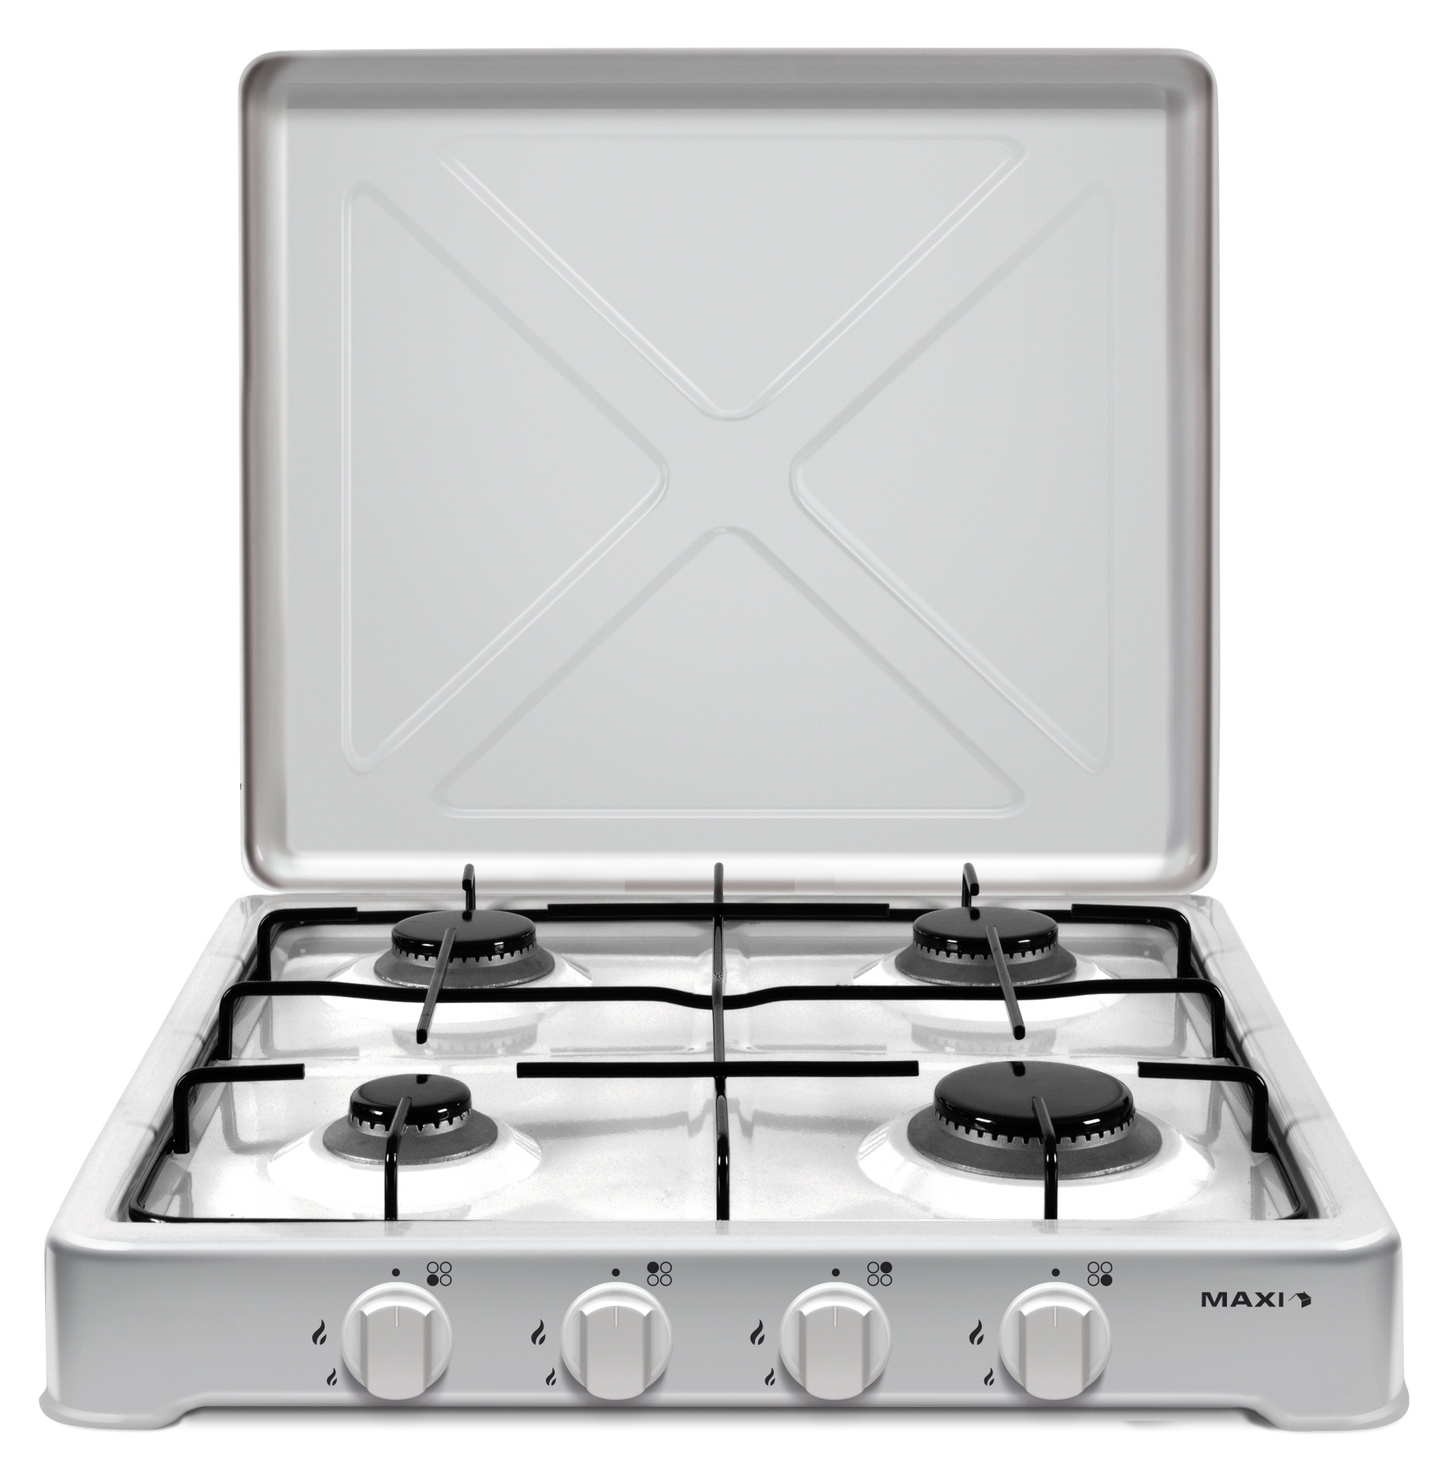 Maxi Tabletop Gas Cooker  maxi411